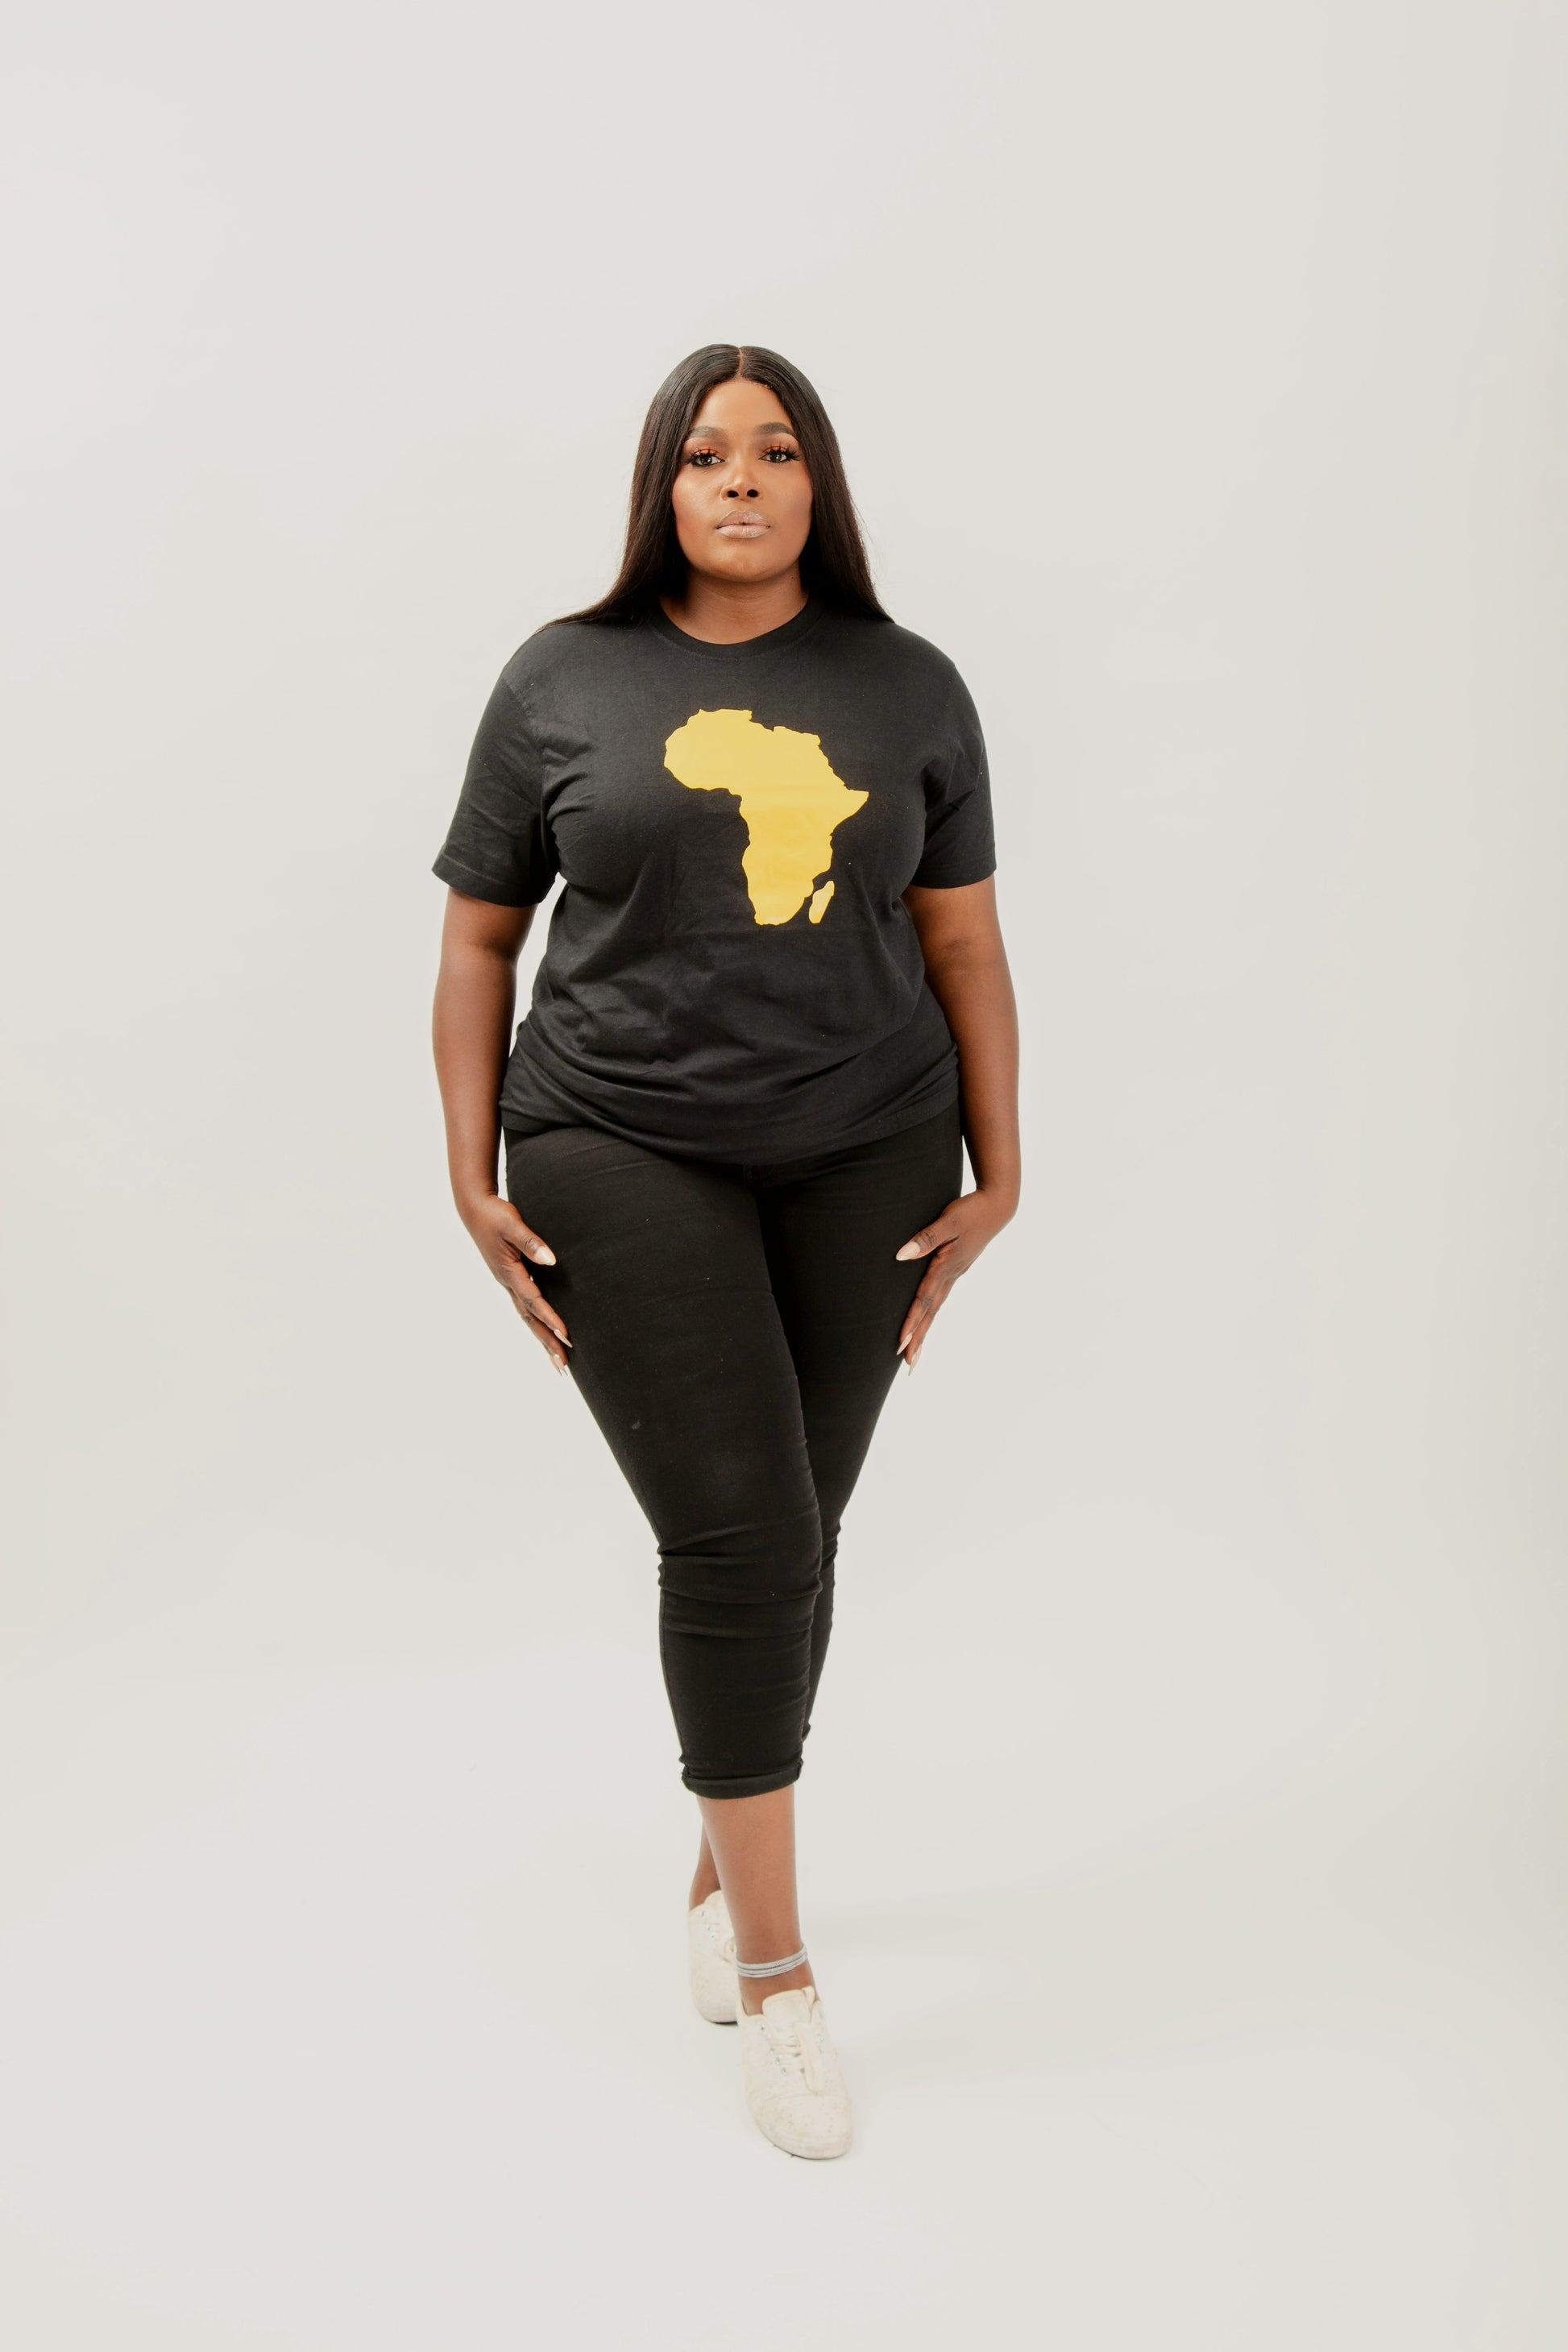 Model Emma in Agwara African Map Unisex Tshirt (Full view)